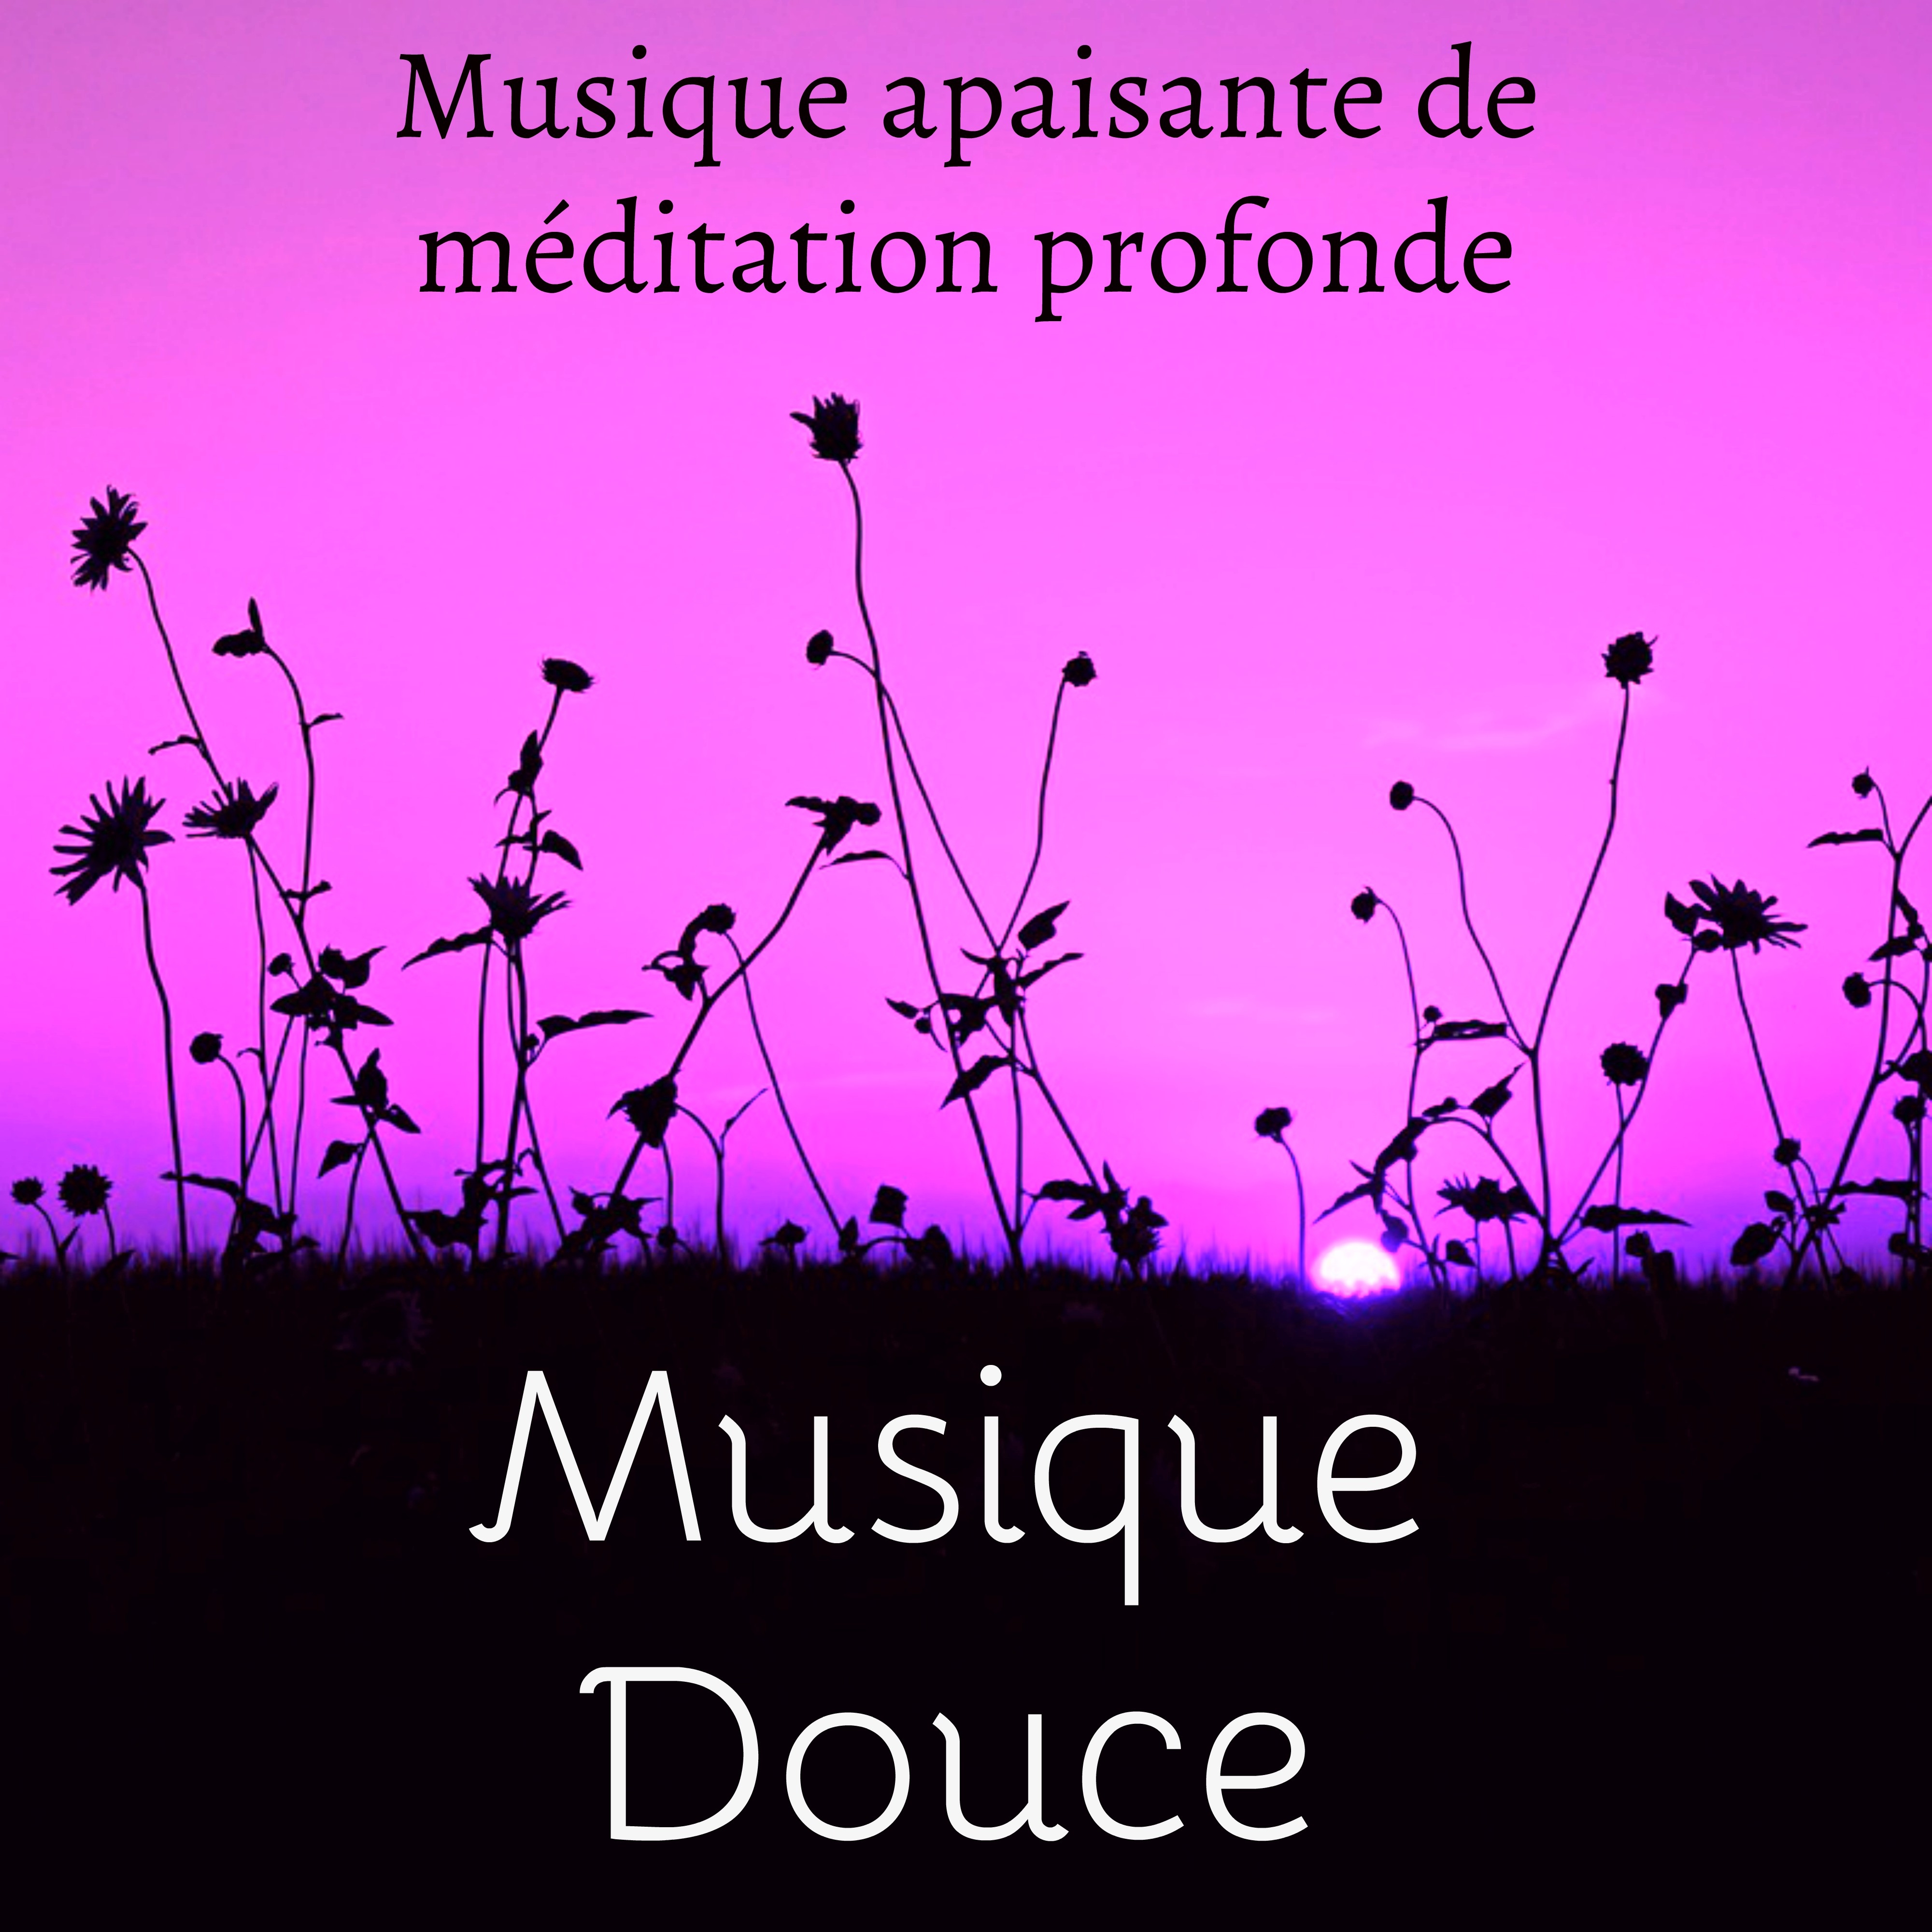 Musique Douce - Musique apaisante de méditation profonde pour technique de relaxation la bonne santé avec sons de la nature instrumentaux